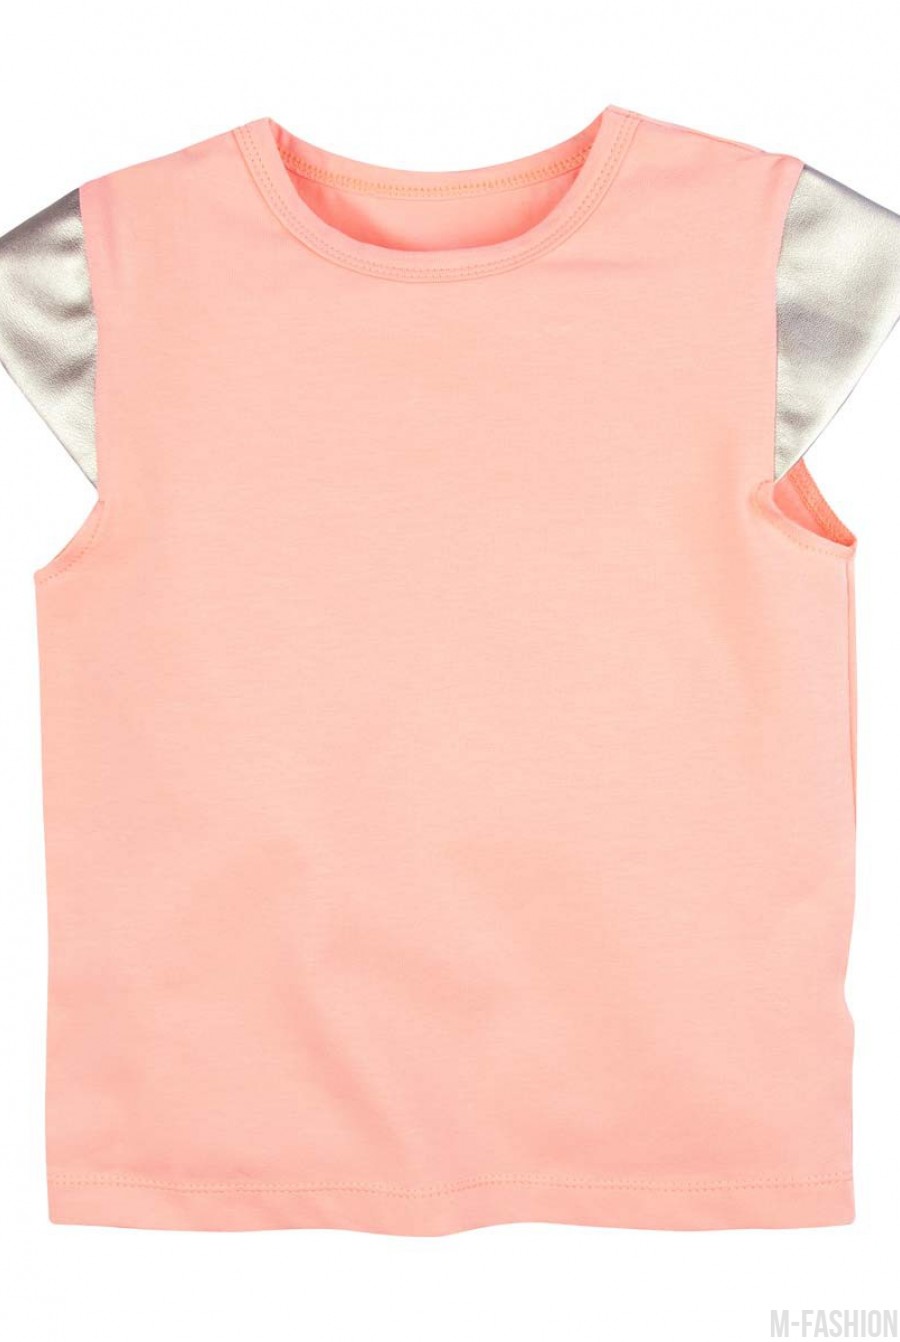 Хлопковая персиковая футболка с короткими золотистыми рукавами из эко-кожи - Фото 1